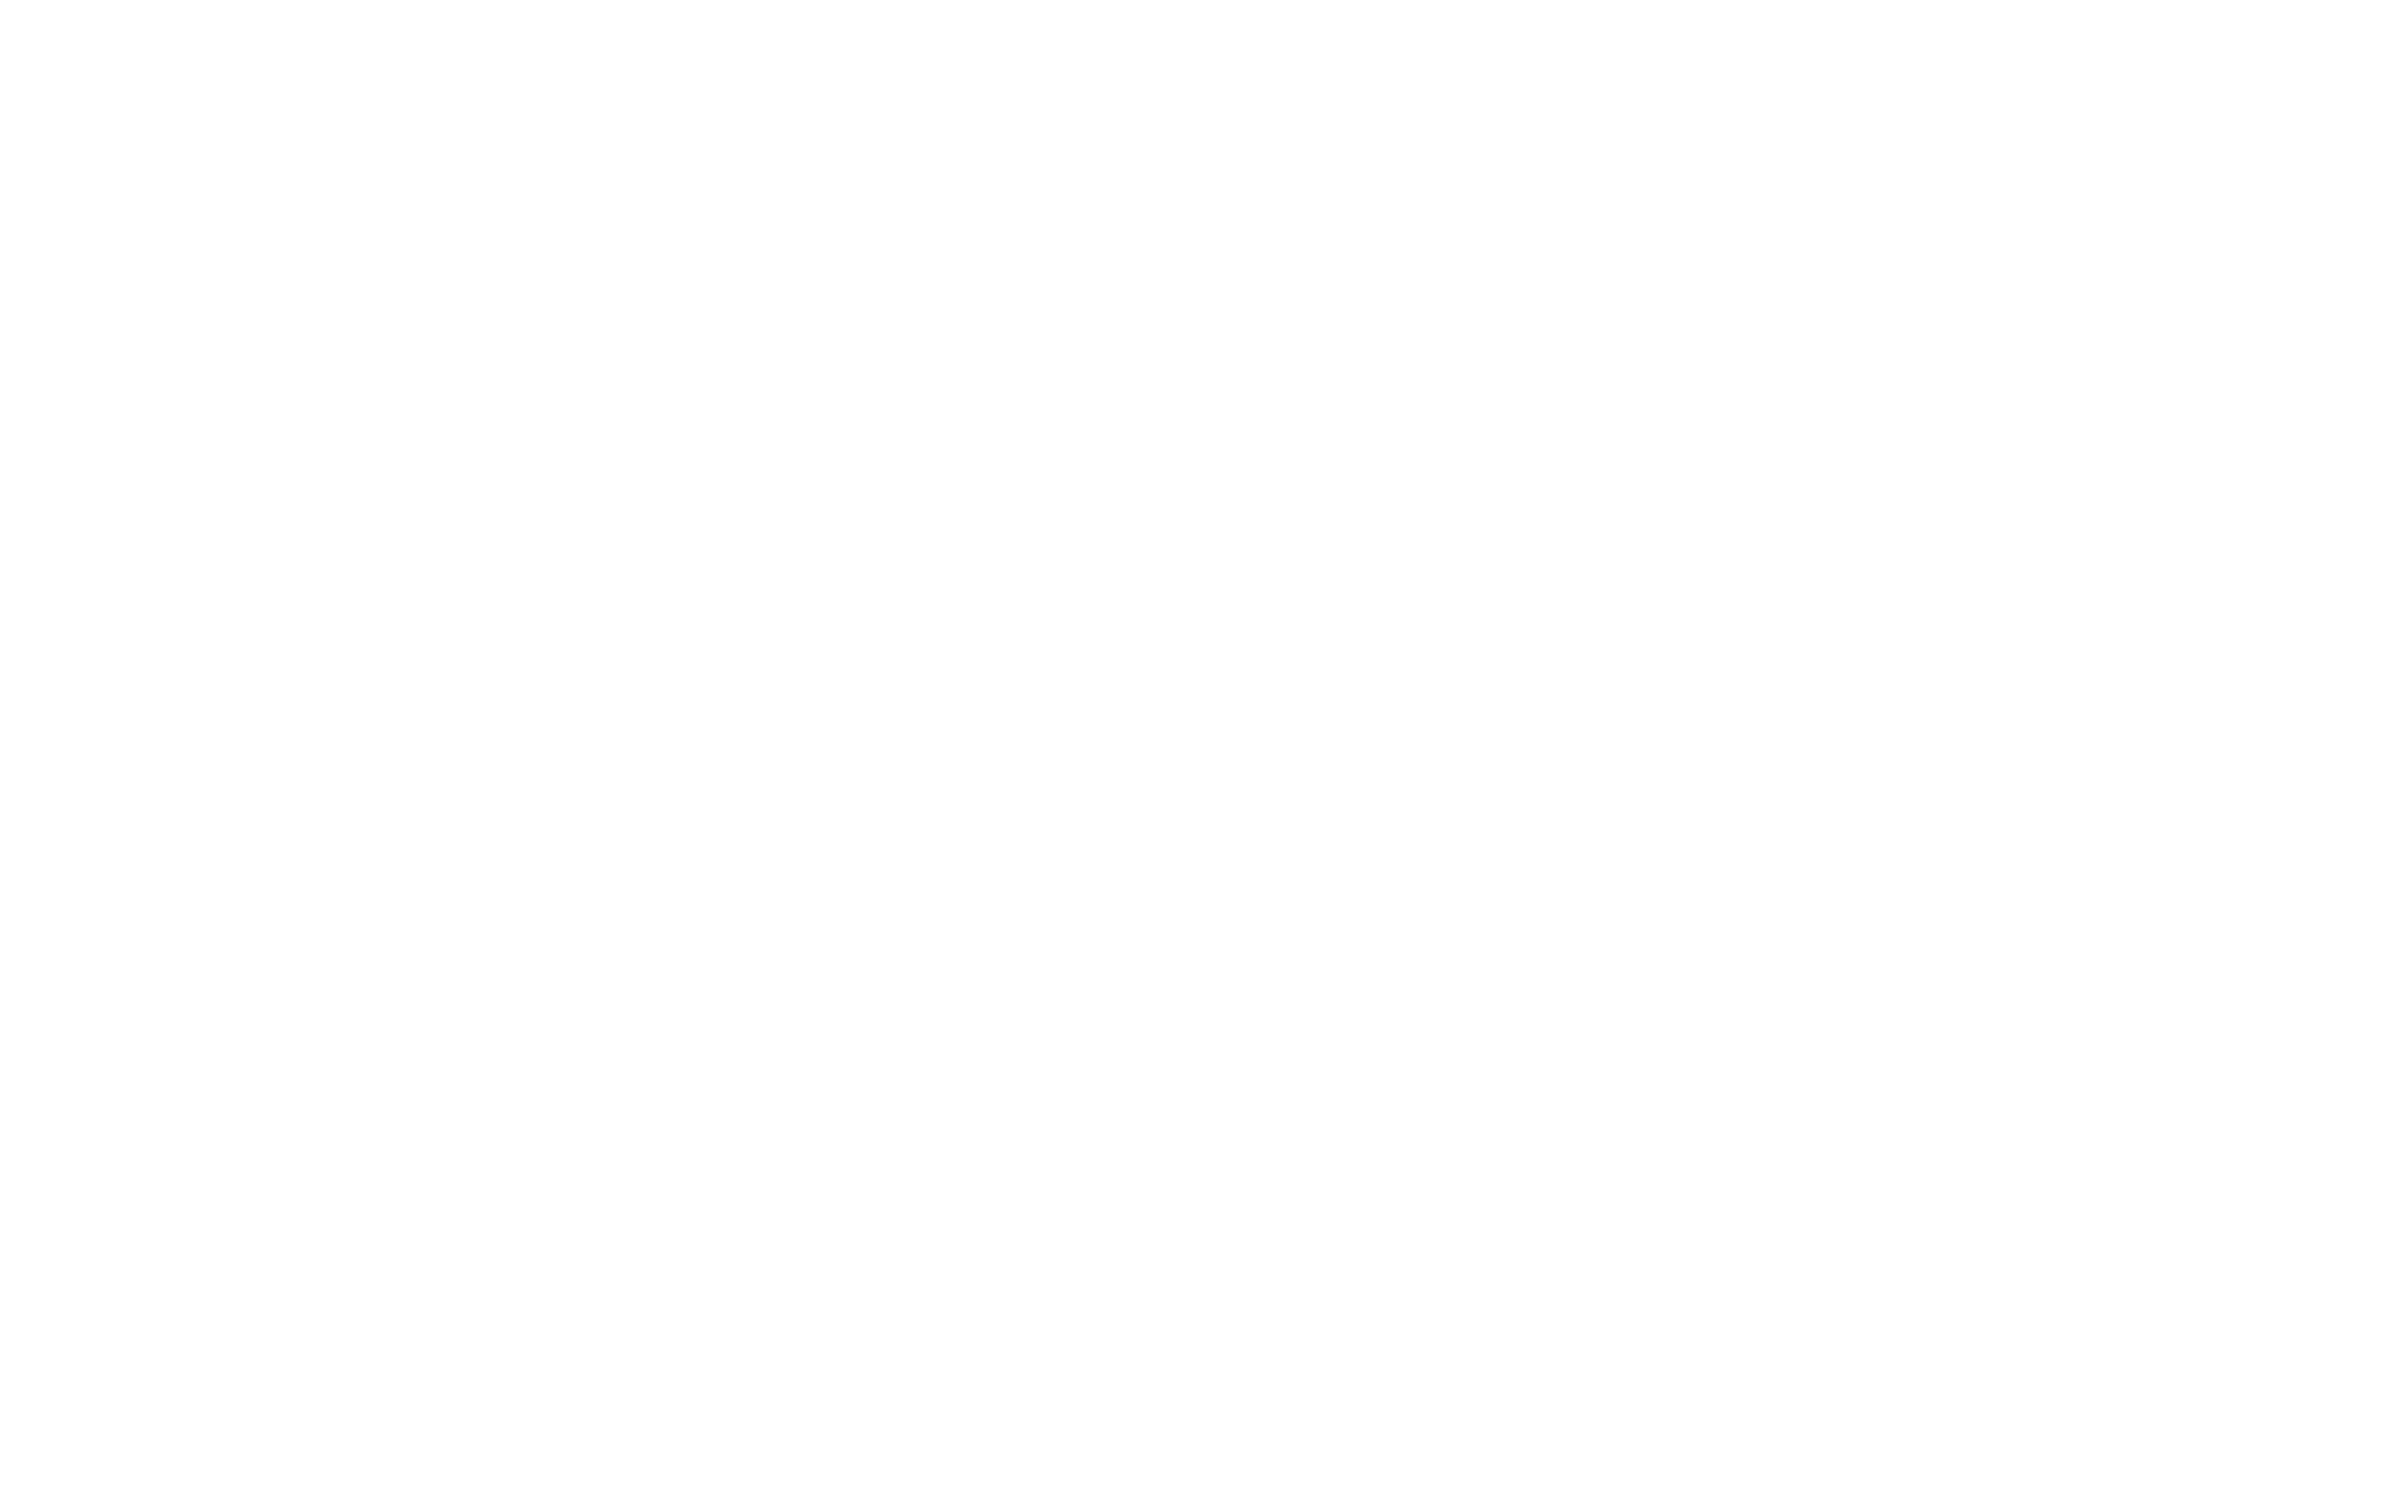 DJI Colorado